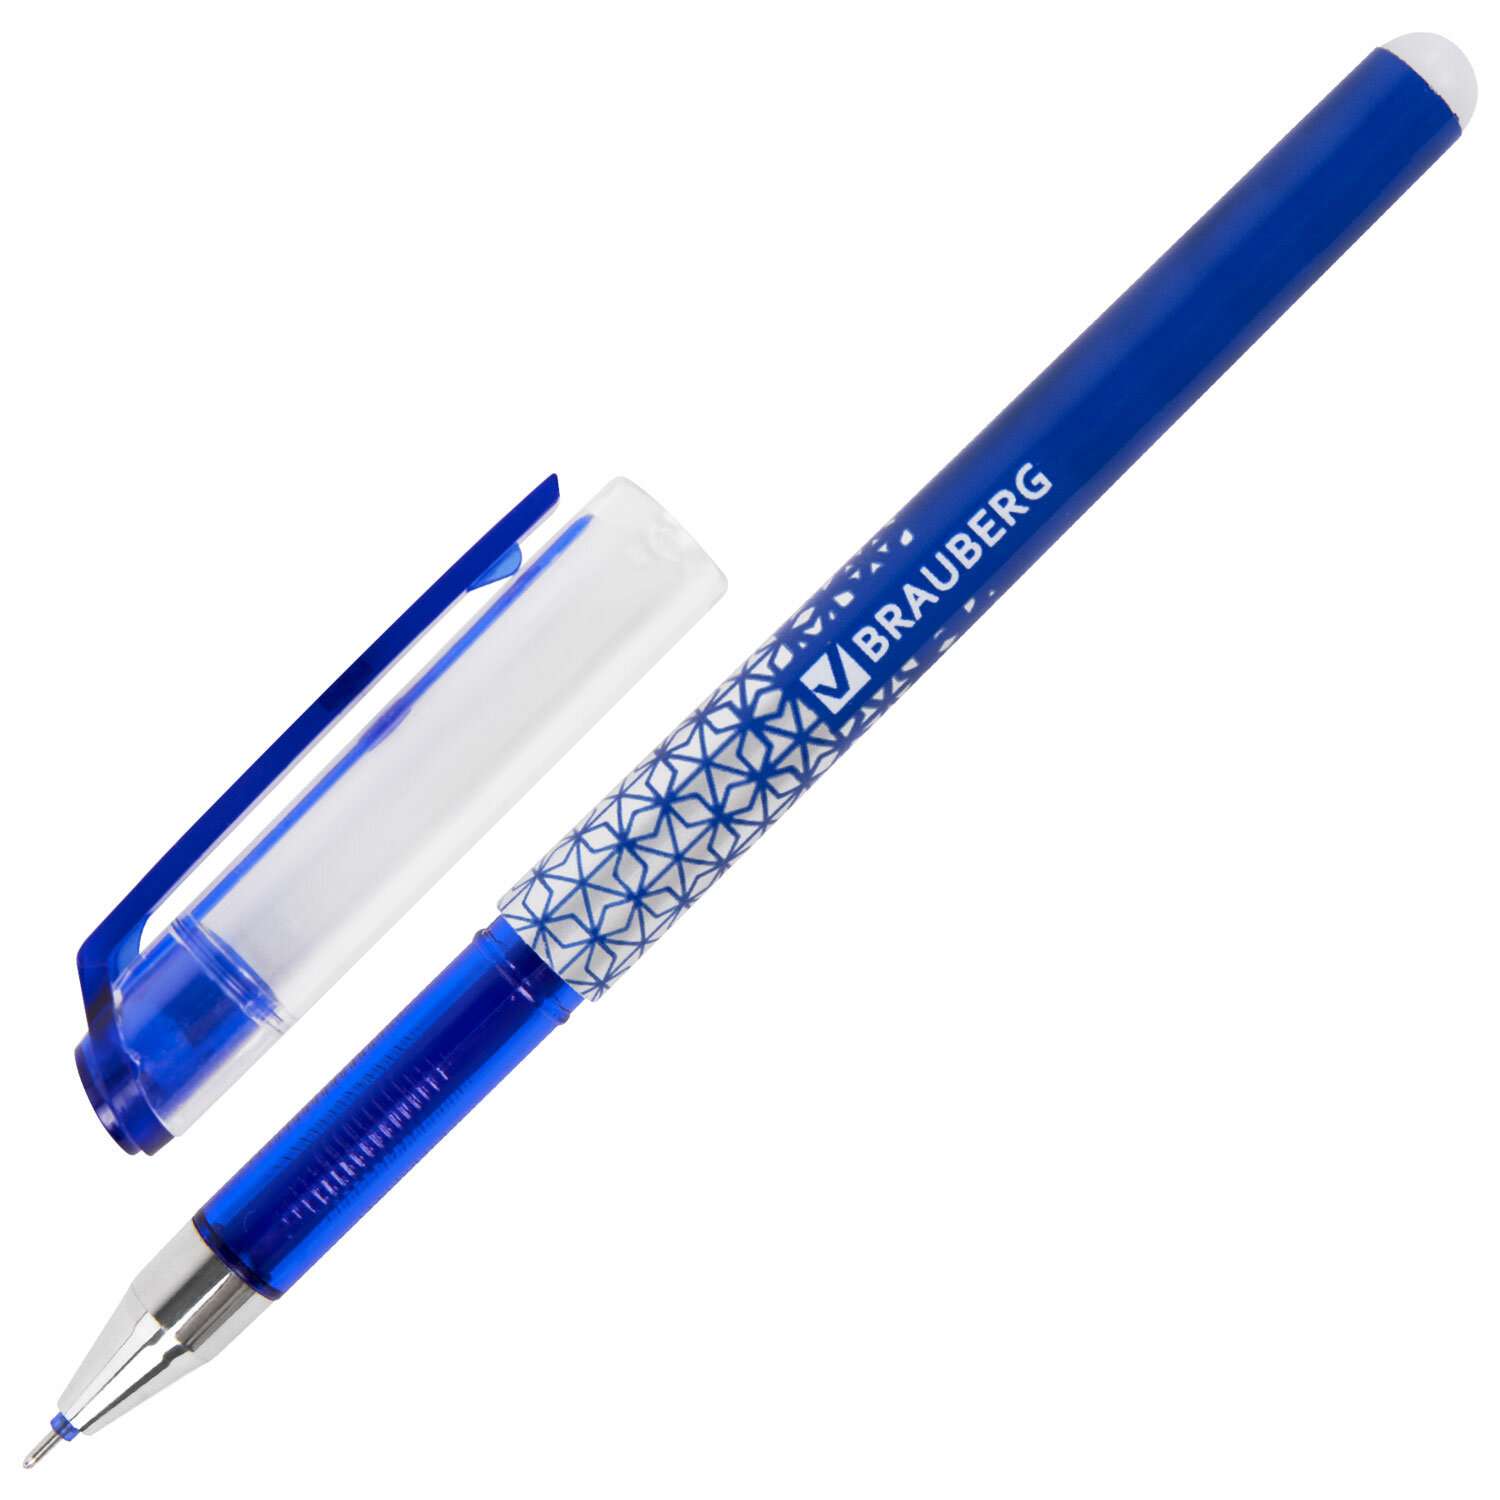 Ручка гелевая Brauberg пиши стирай синяя набор со стержнями 5 штук стираемые - фото 8